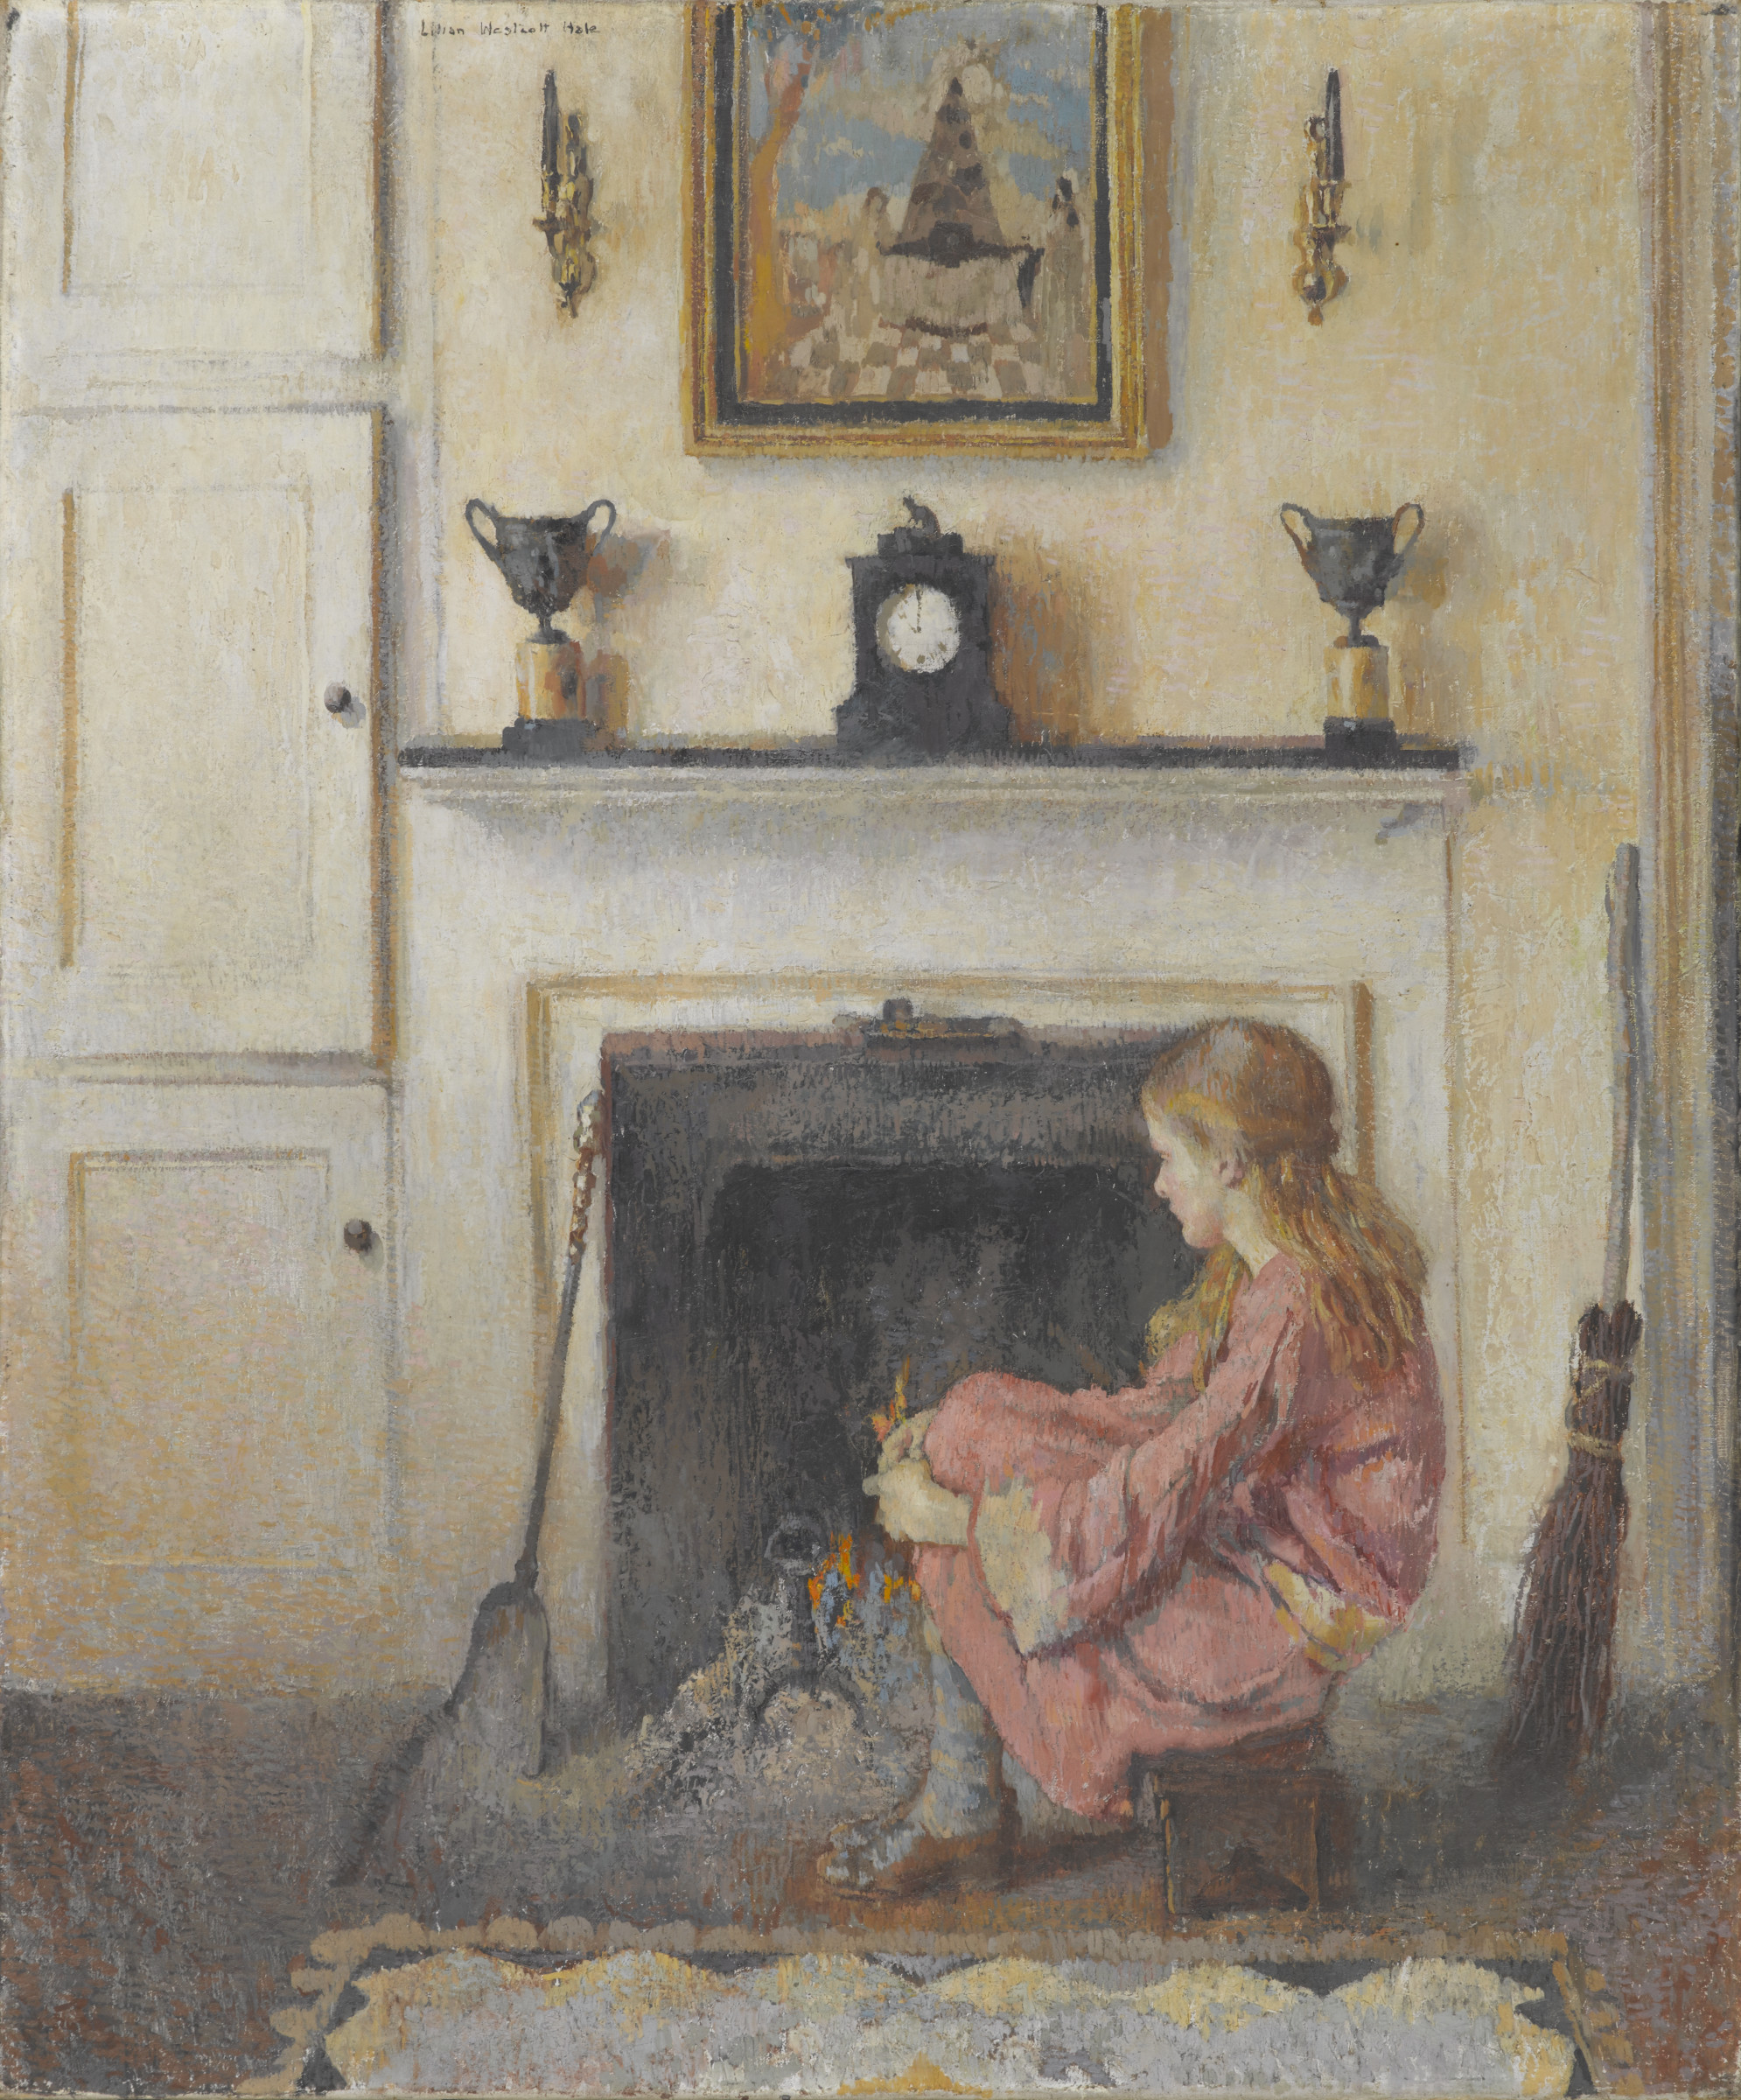 Alice Sentada à Lareira by Lilian Westcott Hale - 1925 - 91.4 x 76.2 cm 